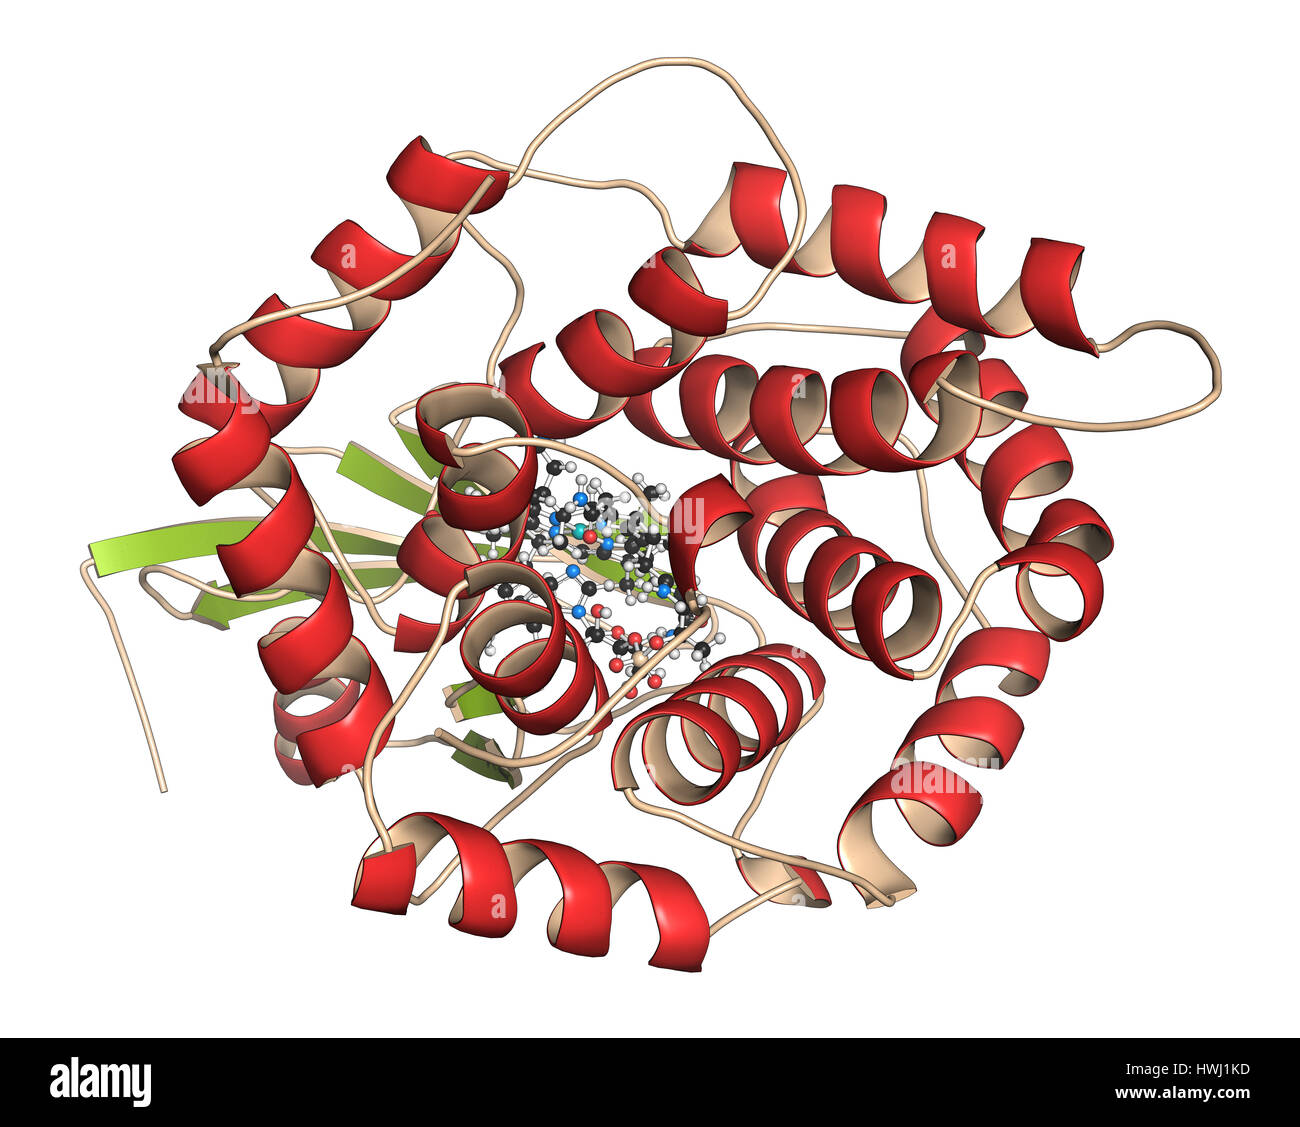 Le facteur intrinsèque (SI) de protéines. Glycoprotéine produite dans l'estomac, nécessaire à l'absorption de la vitamine B12 (cobalamine). 3D illustration. Protéines : Ca Banque D'Images